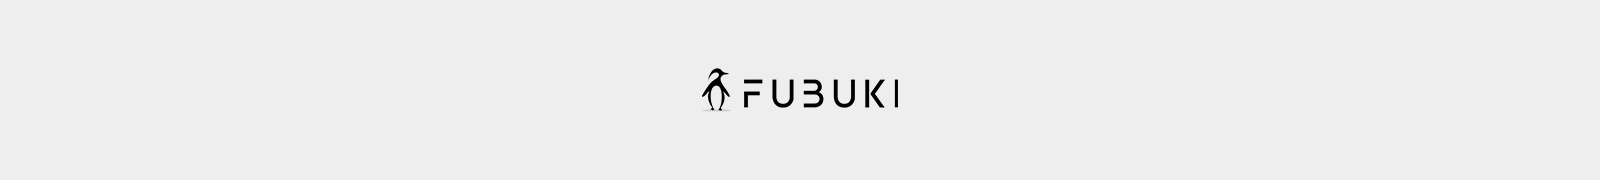 FUBUKI header image